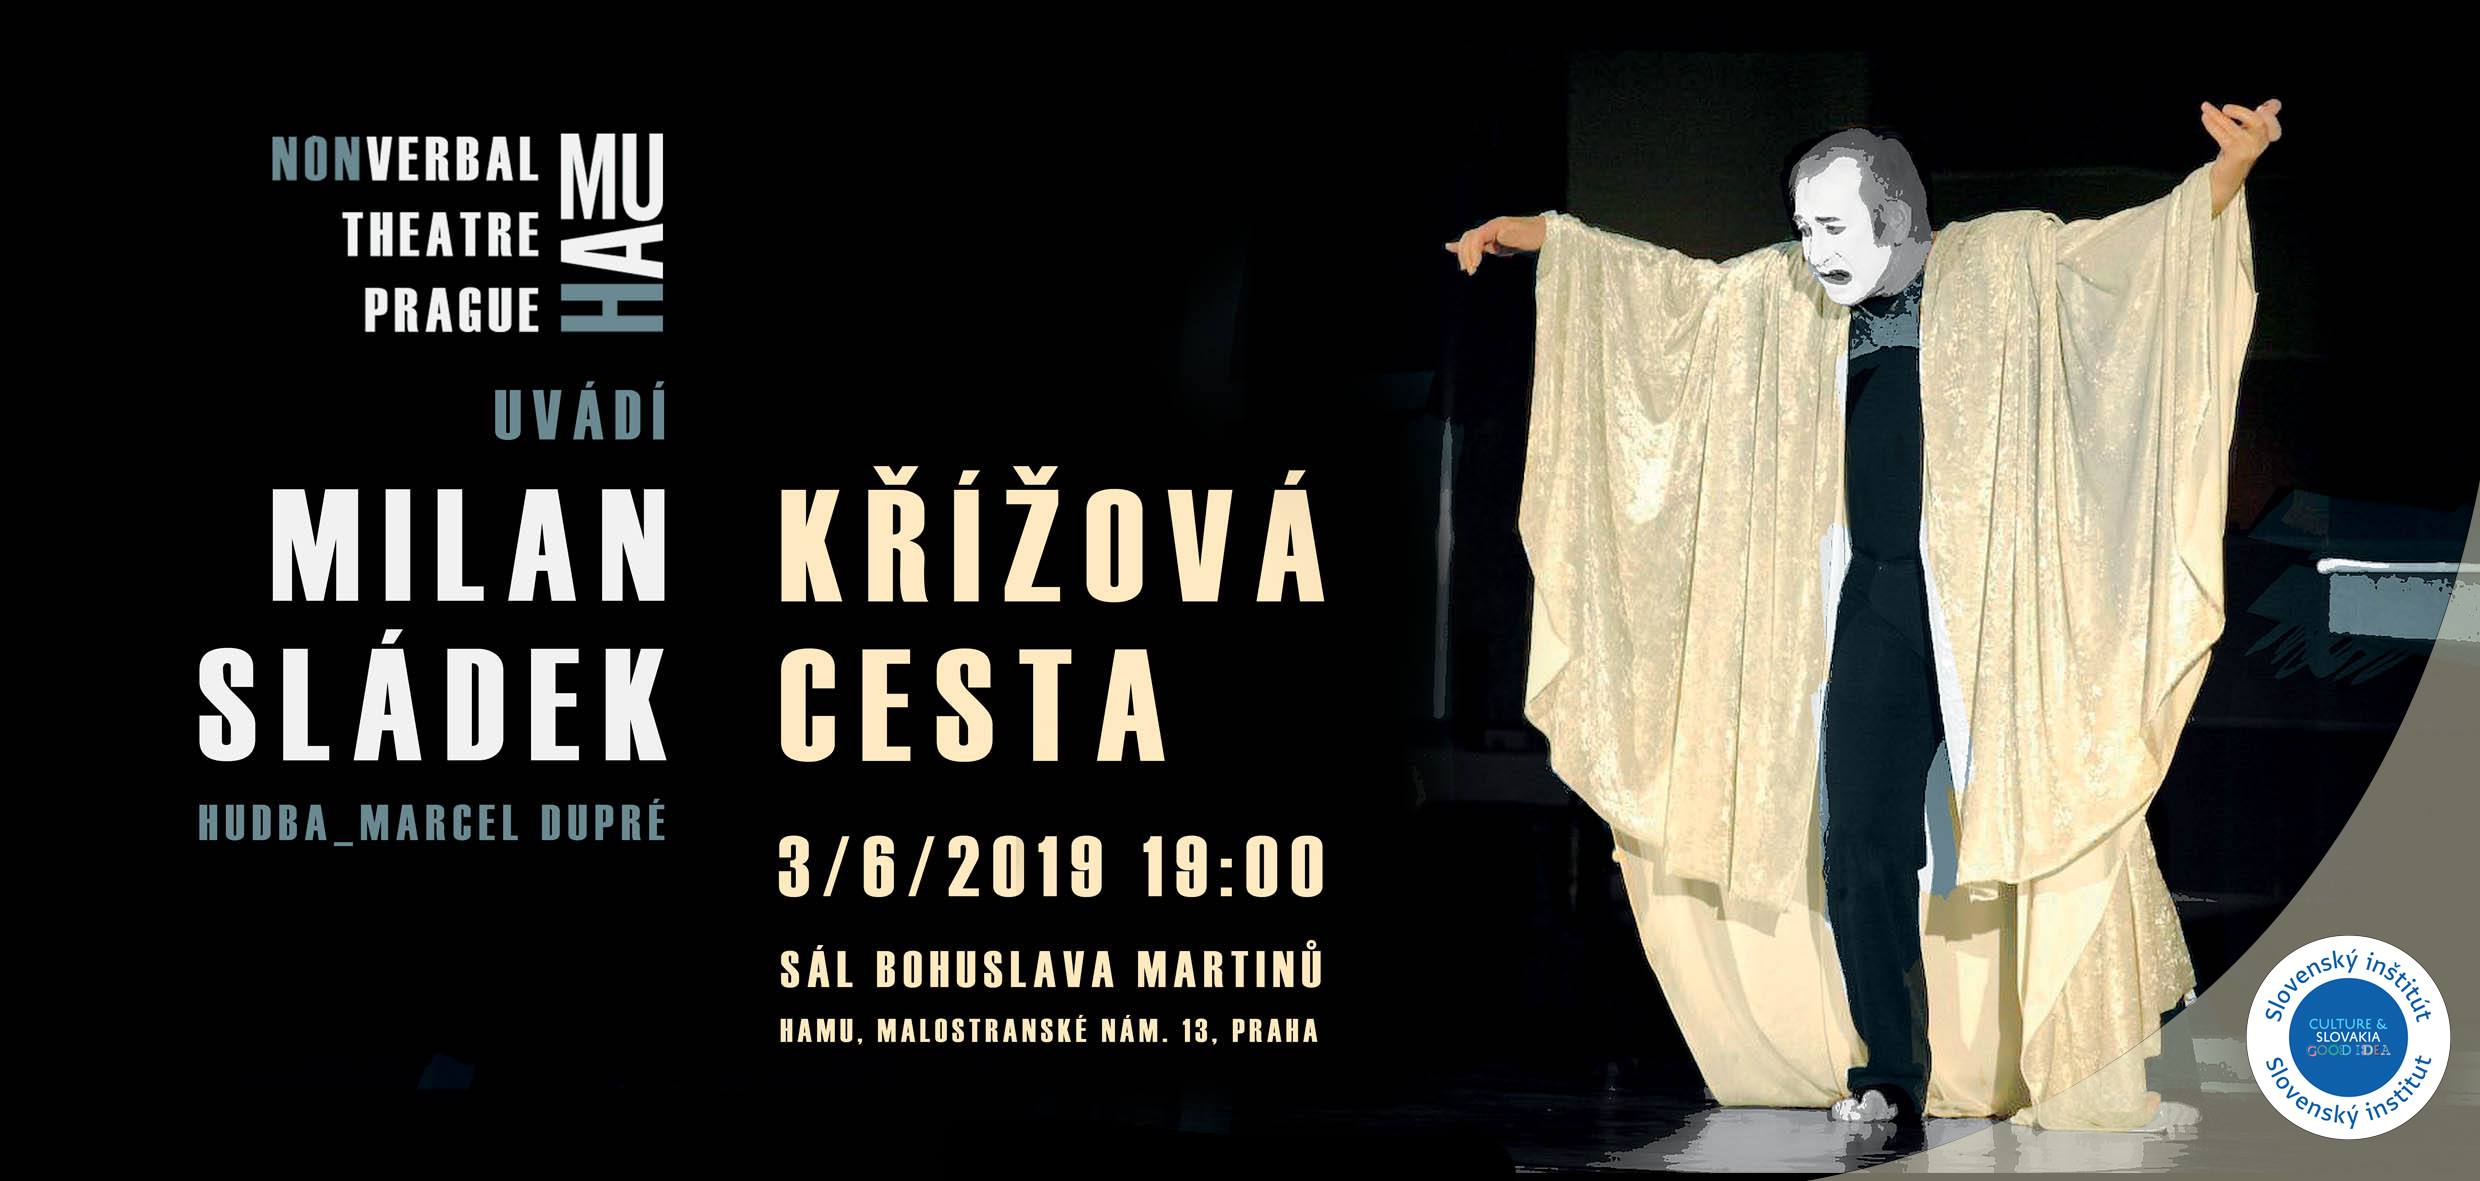 Milan Sldek - Kov ceta 2019 Praha - autorsk predstavenie svetoznmeho slovenskho mma a reisra Milana Sldka